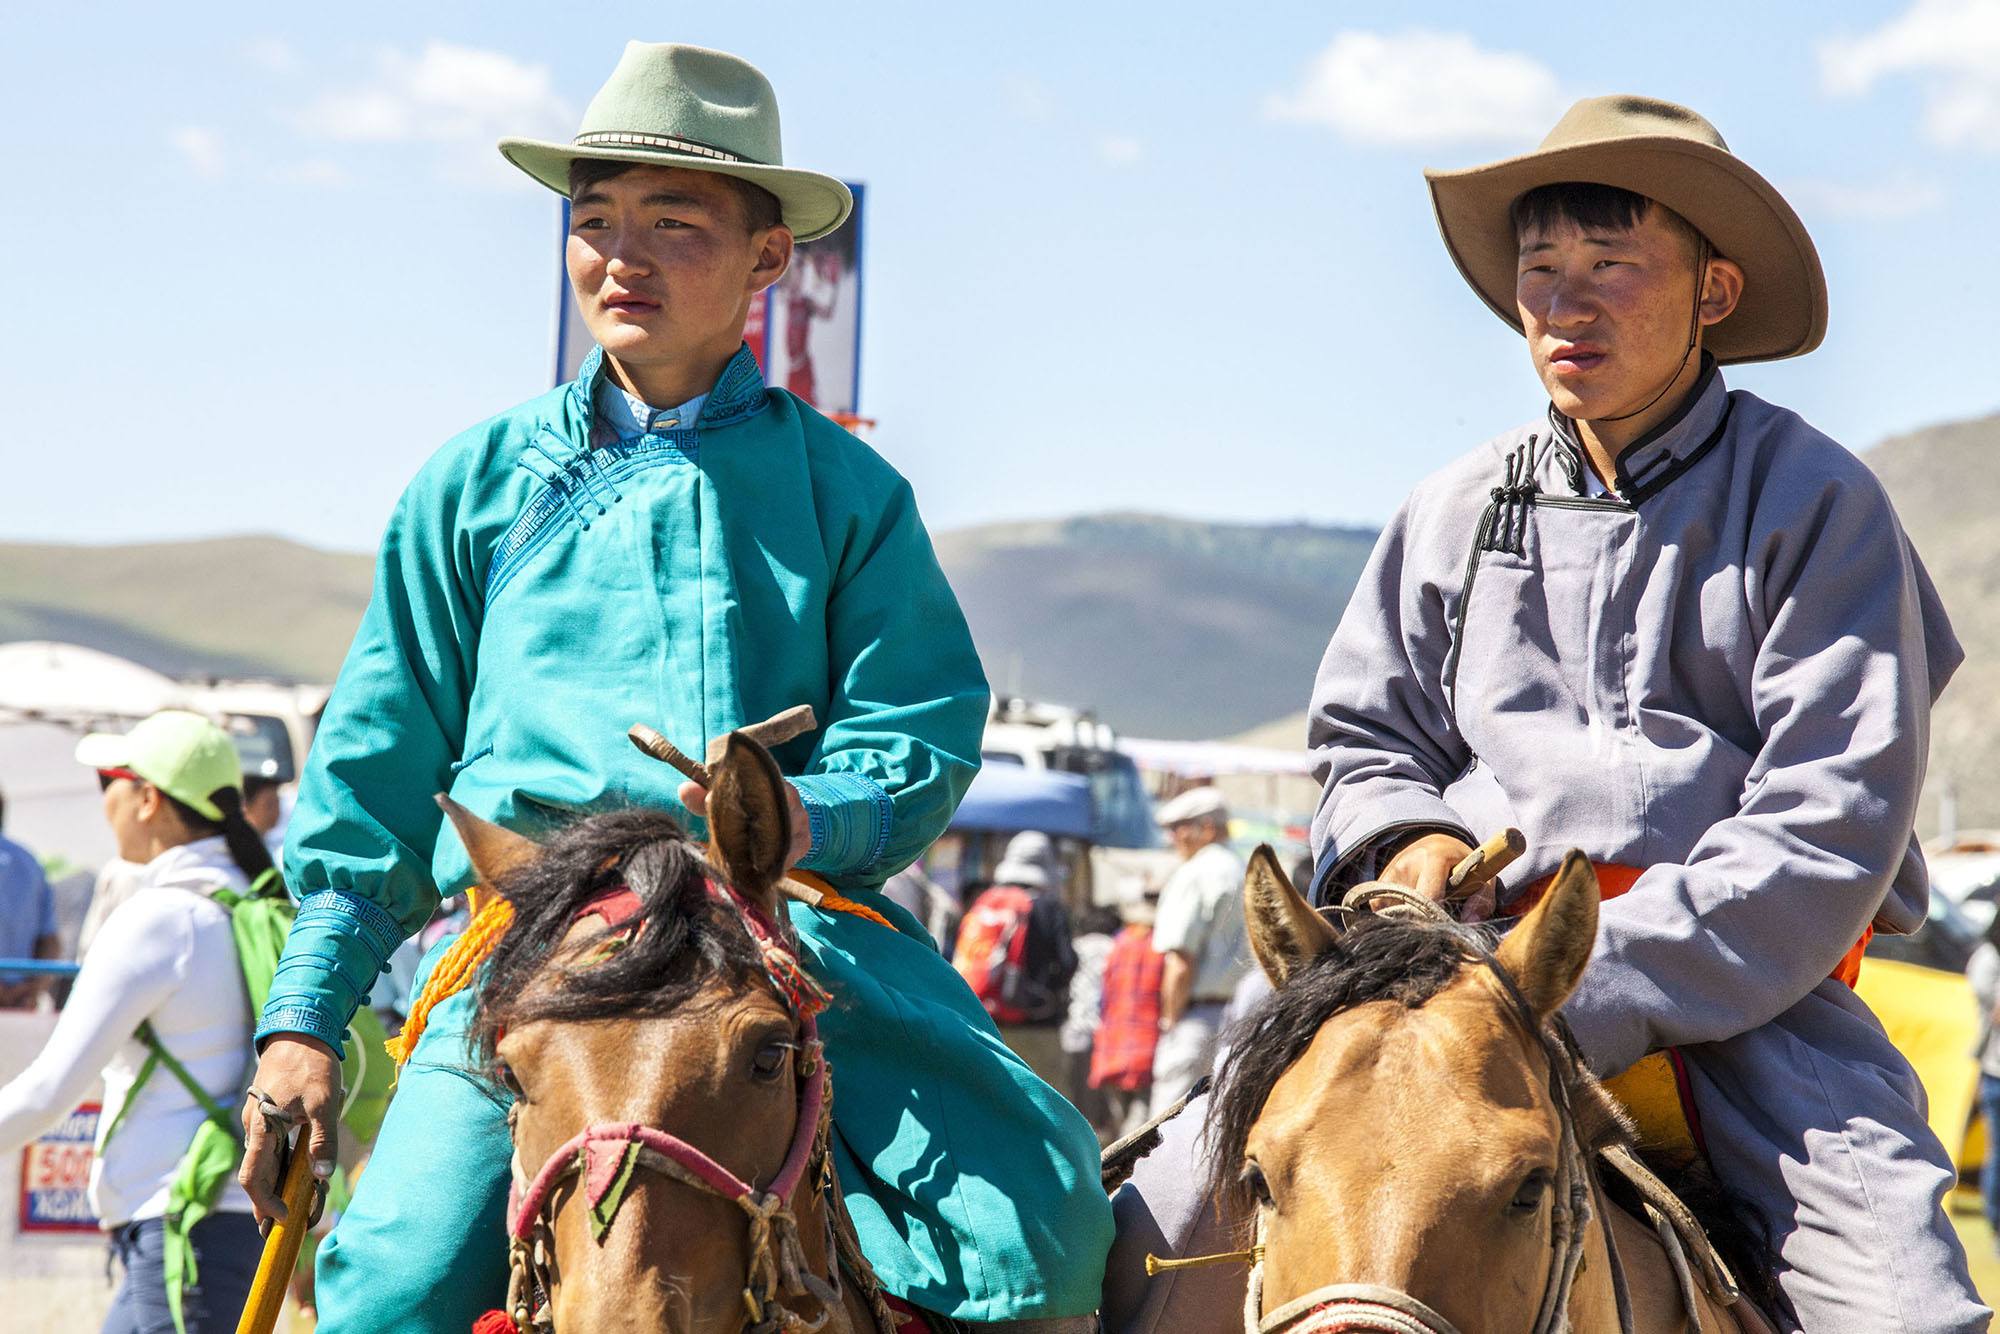 Mongolian men on horses wearning deel